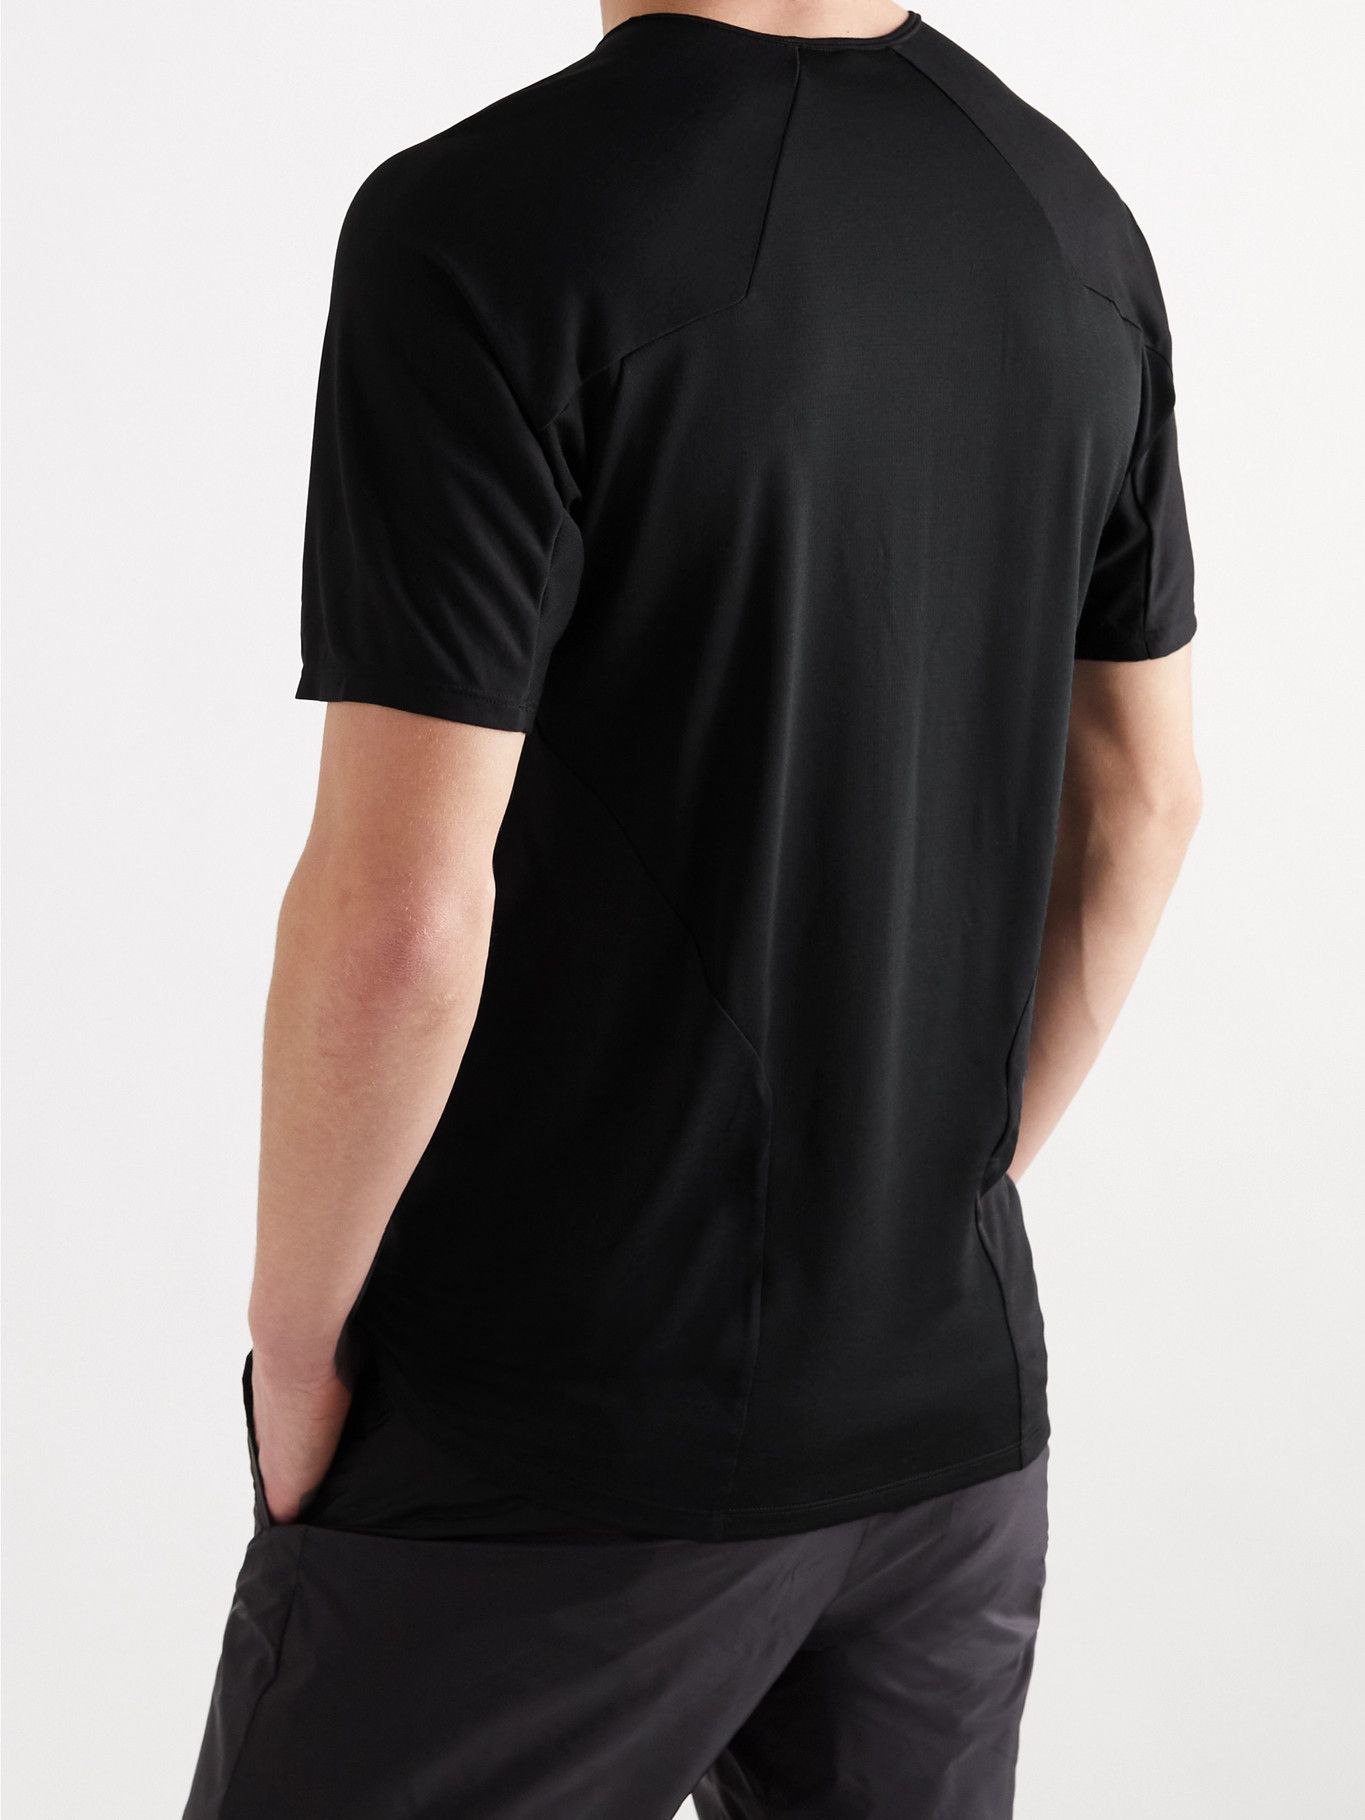 VEILANCE - Cevian Comp Tech-Jersey T-Shirt - Black Arc'teryx Veilance